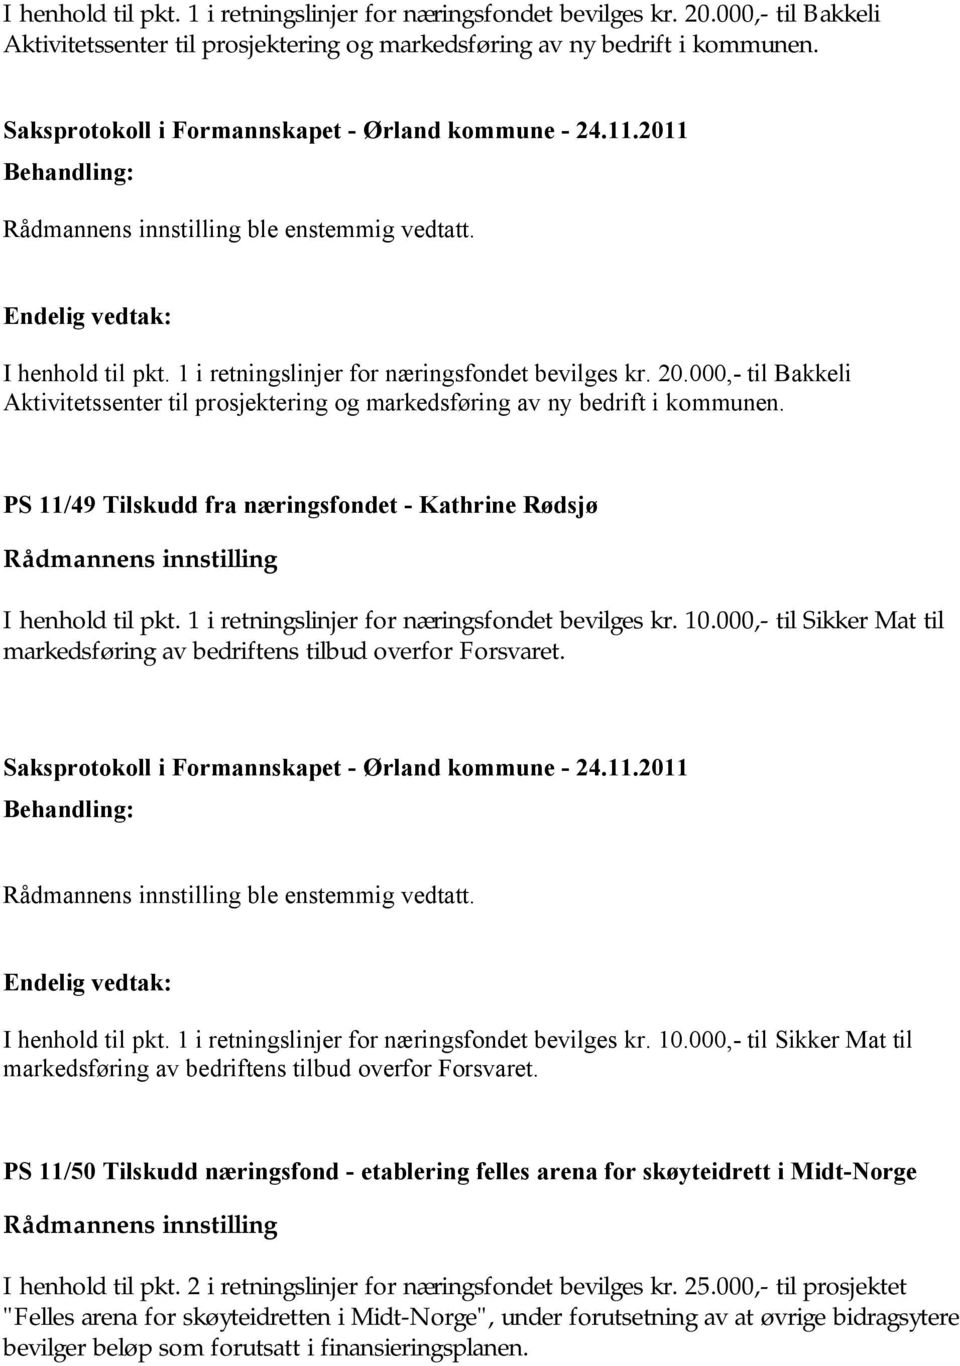 PS 11/49 Tilskudd fra næringsfondet - Kathrine Rødsjø I henhold til pkt. 1 i retningslinjer for næringsfondet bevilges kr. 10.